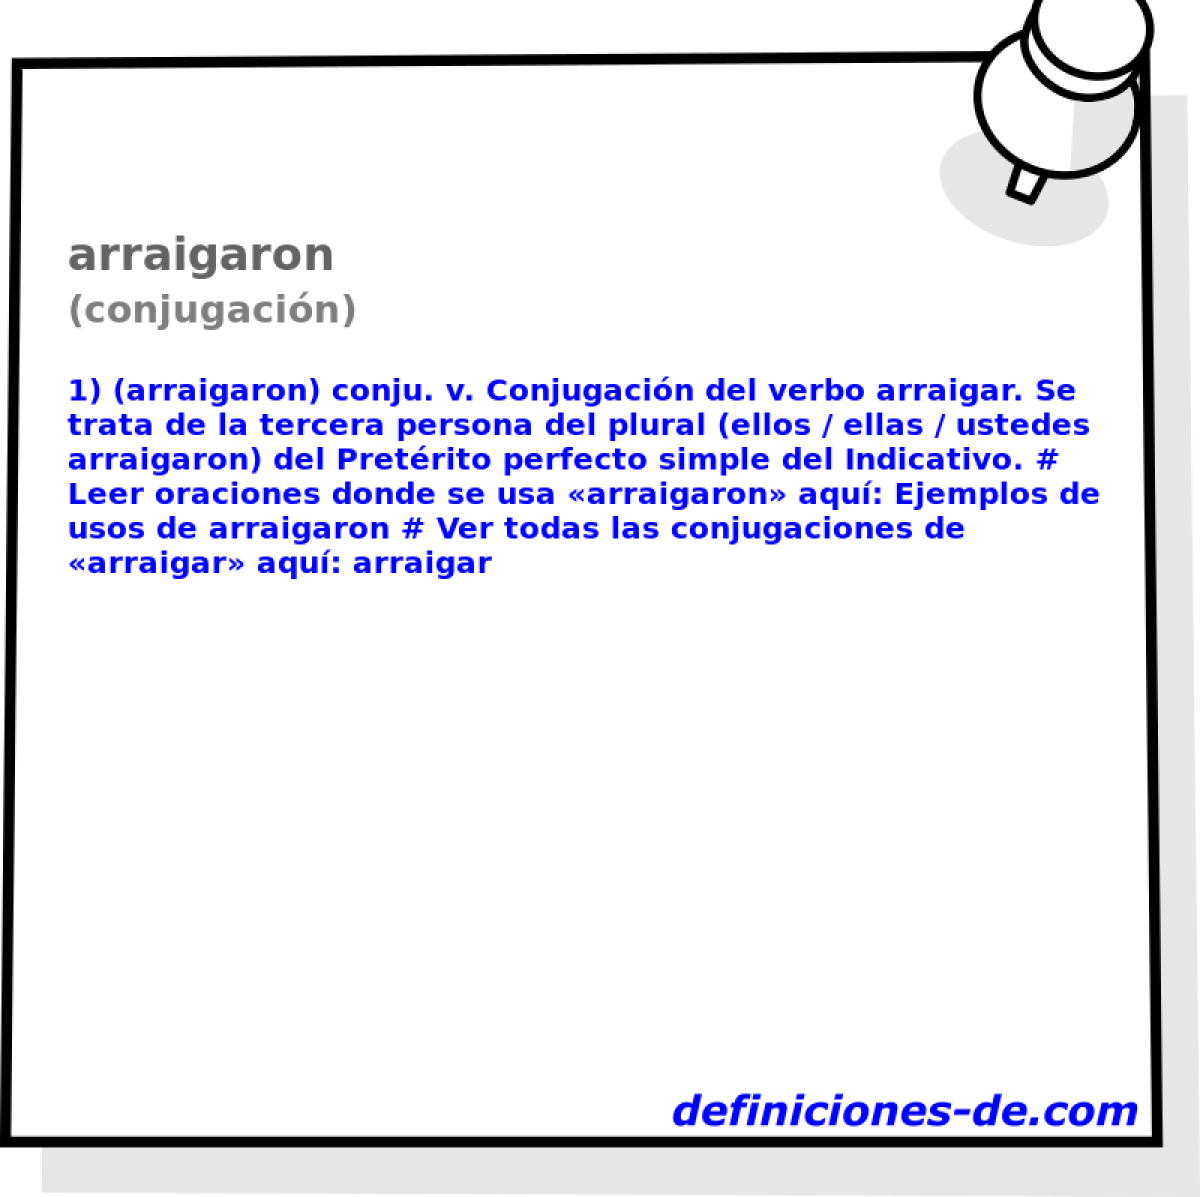 arraigaron (conjugacin)